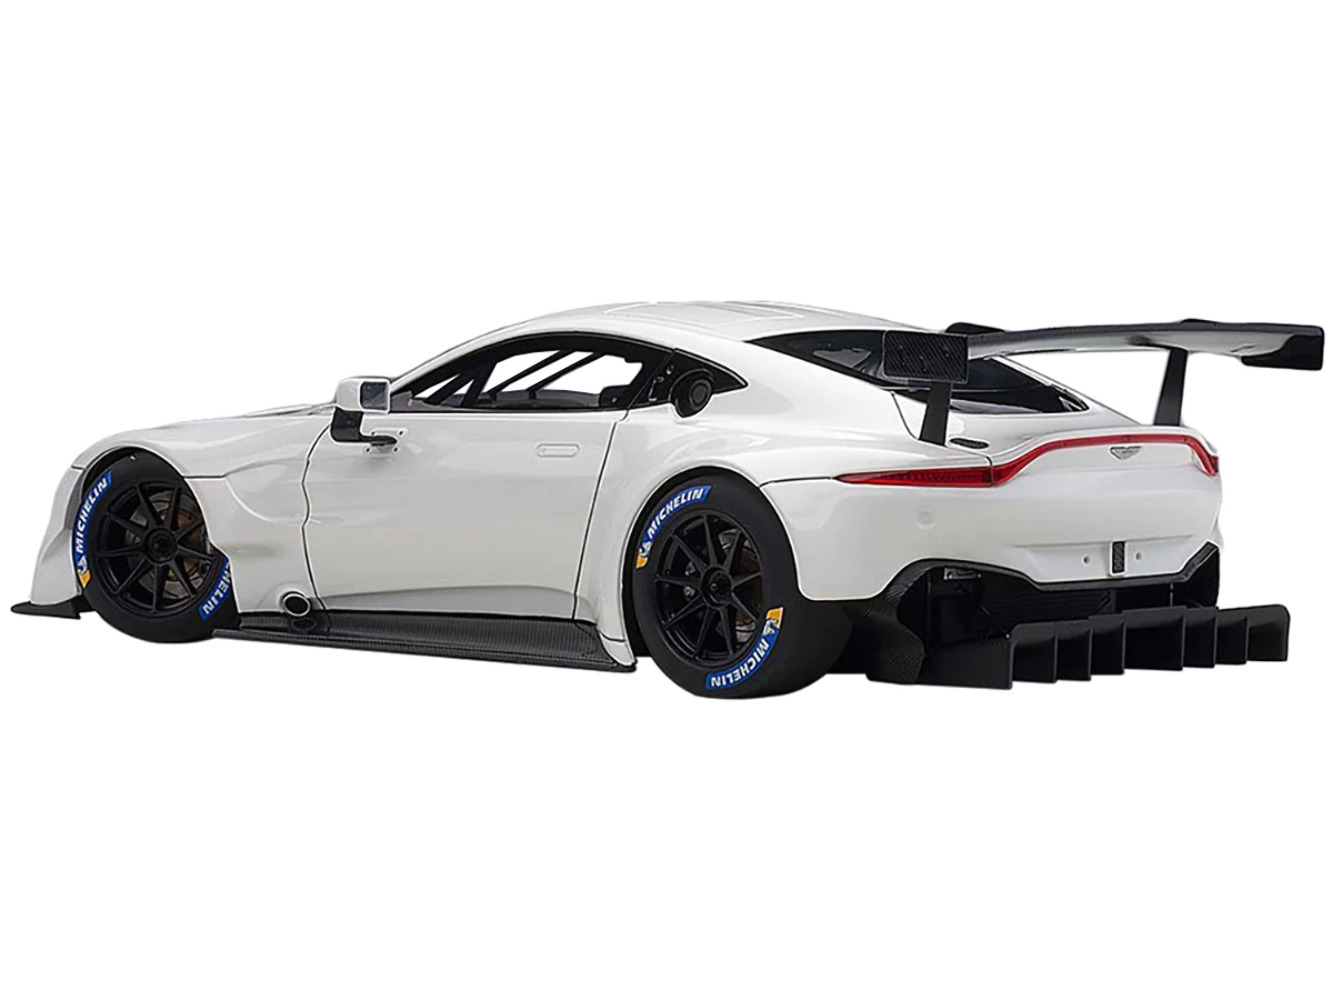 2018 Aston Martin Vantage GTE Le Mans PRO with Carbon Accents 1/18 Model Car